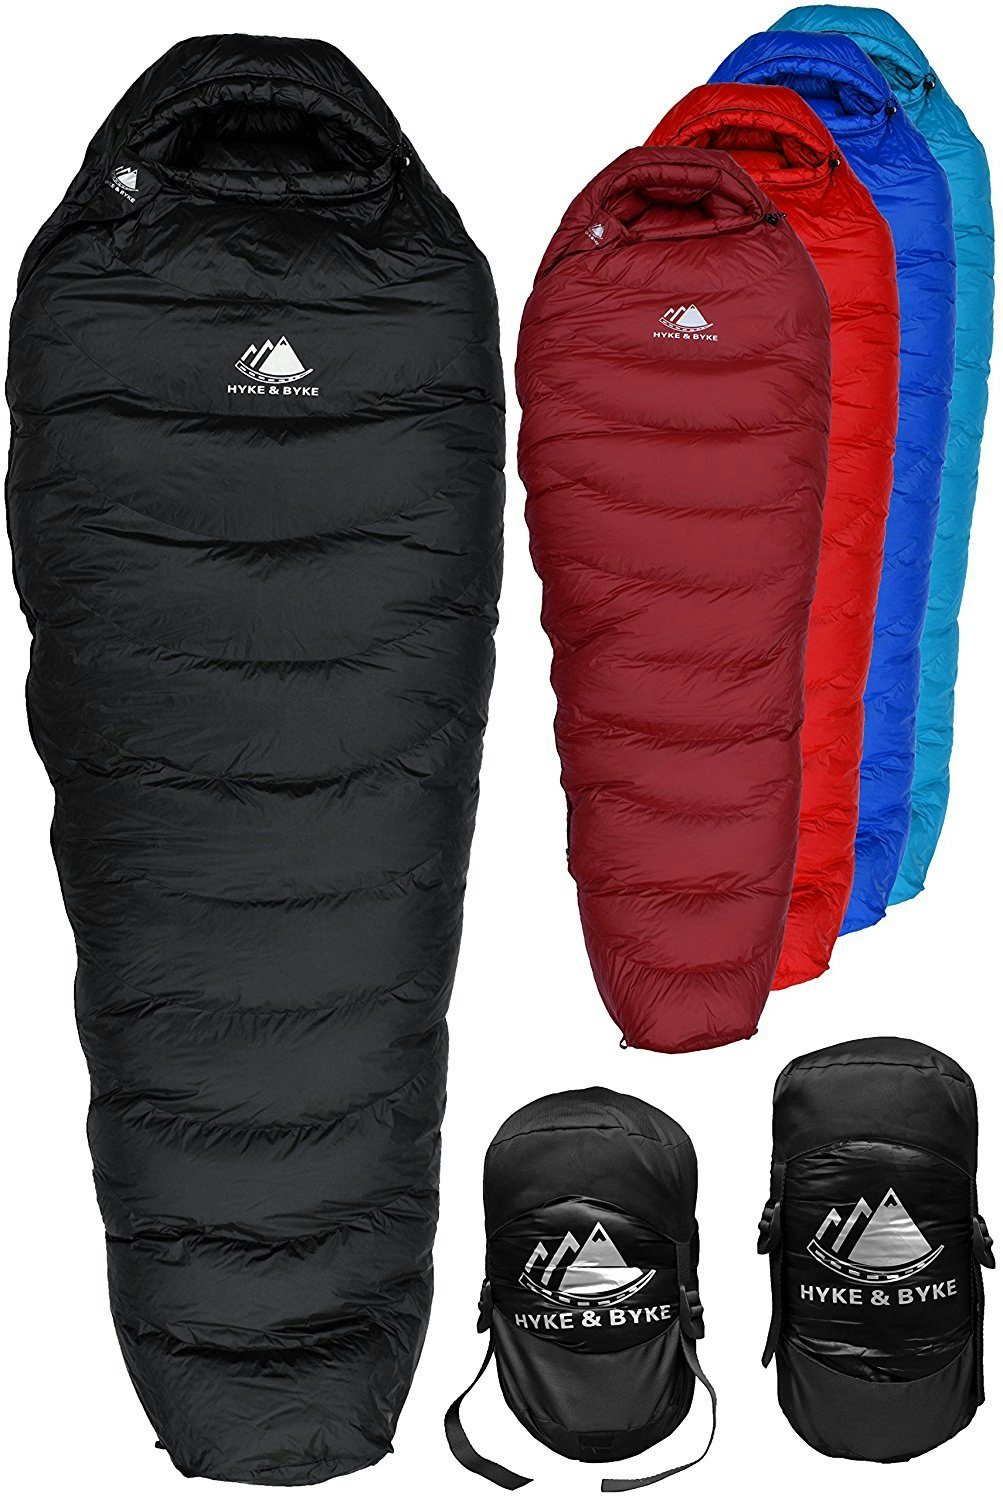 western mountaineering ultralite 20 degree sleeping bag